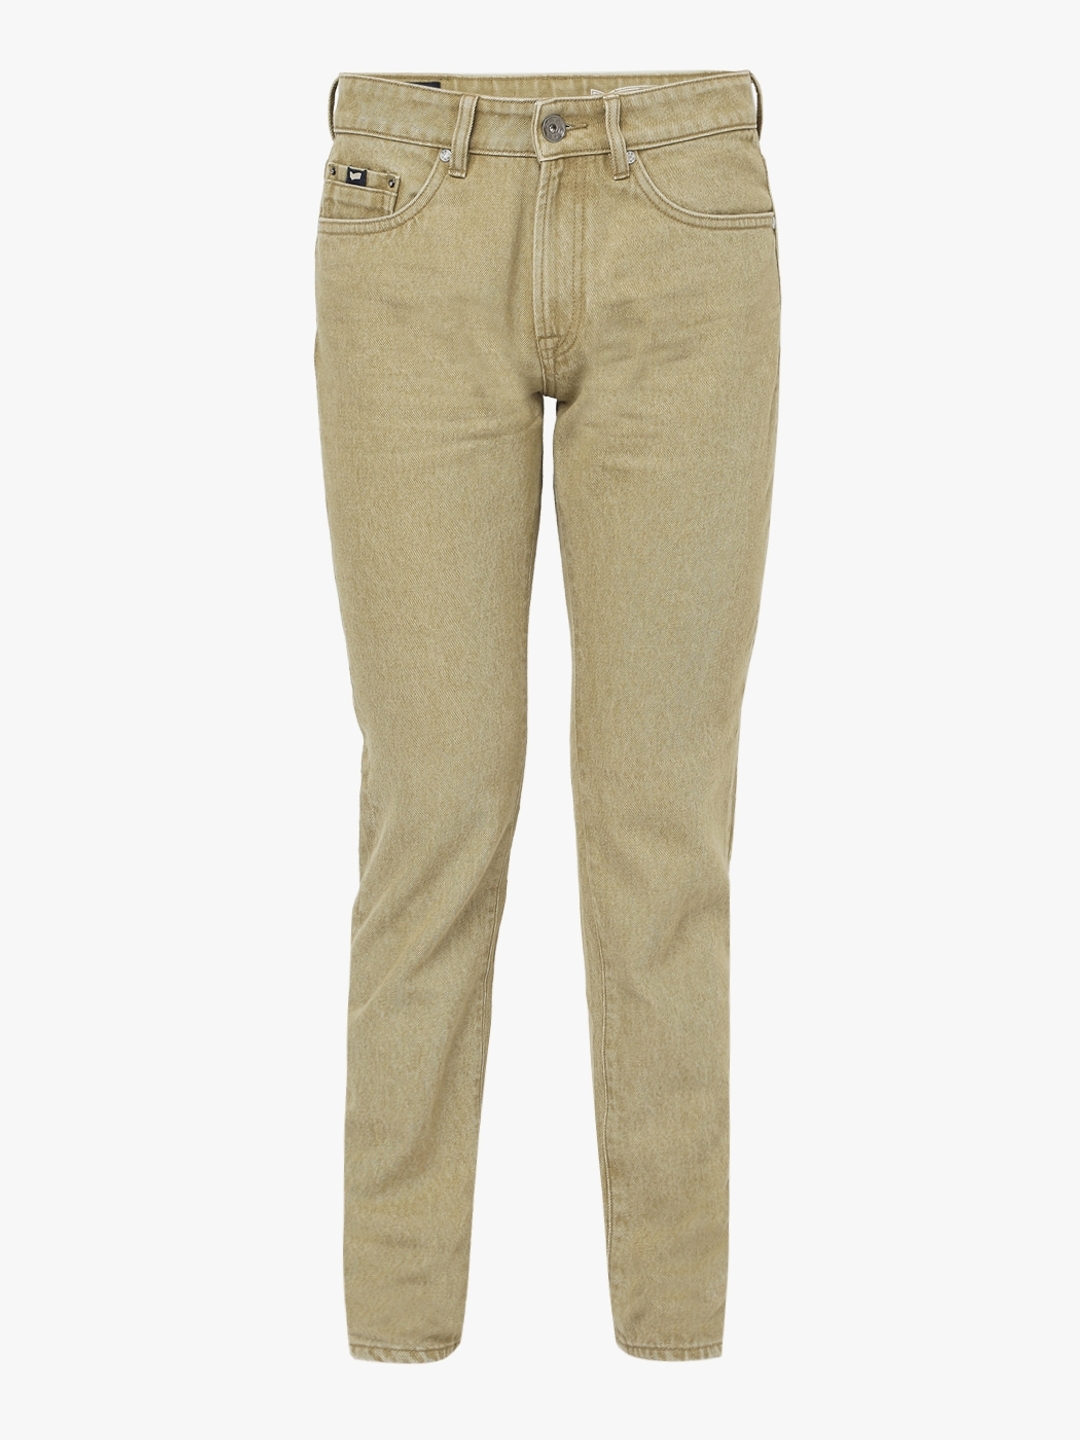 Buy Gloria Vanderbilt Plus Size Amanda Denim Jeans Perfect Khaki 22W Short  at Amazon.in